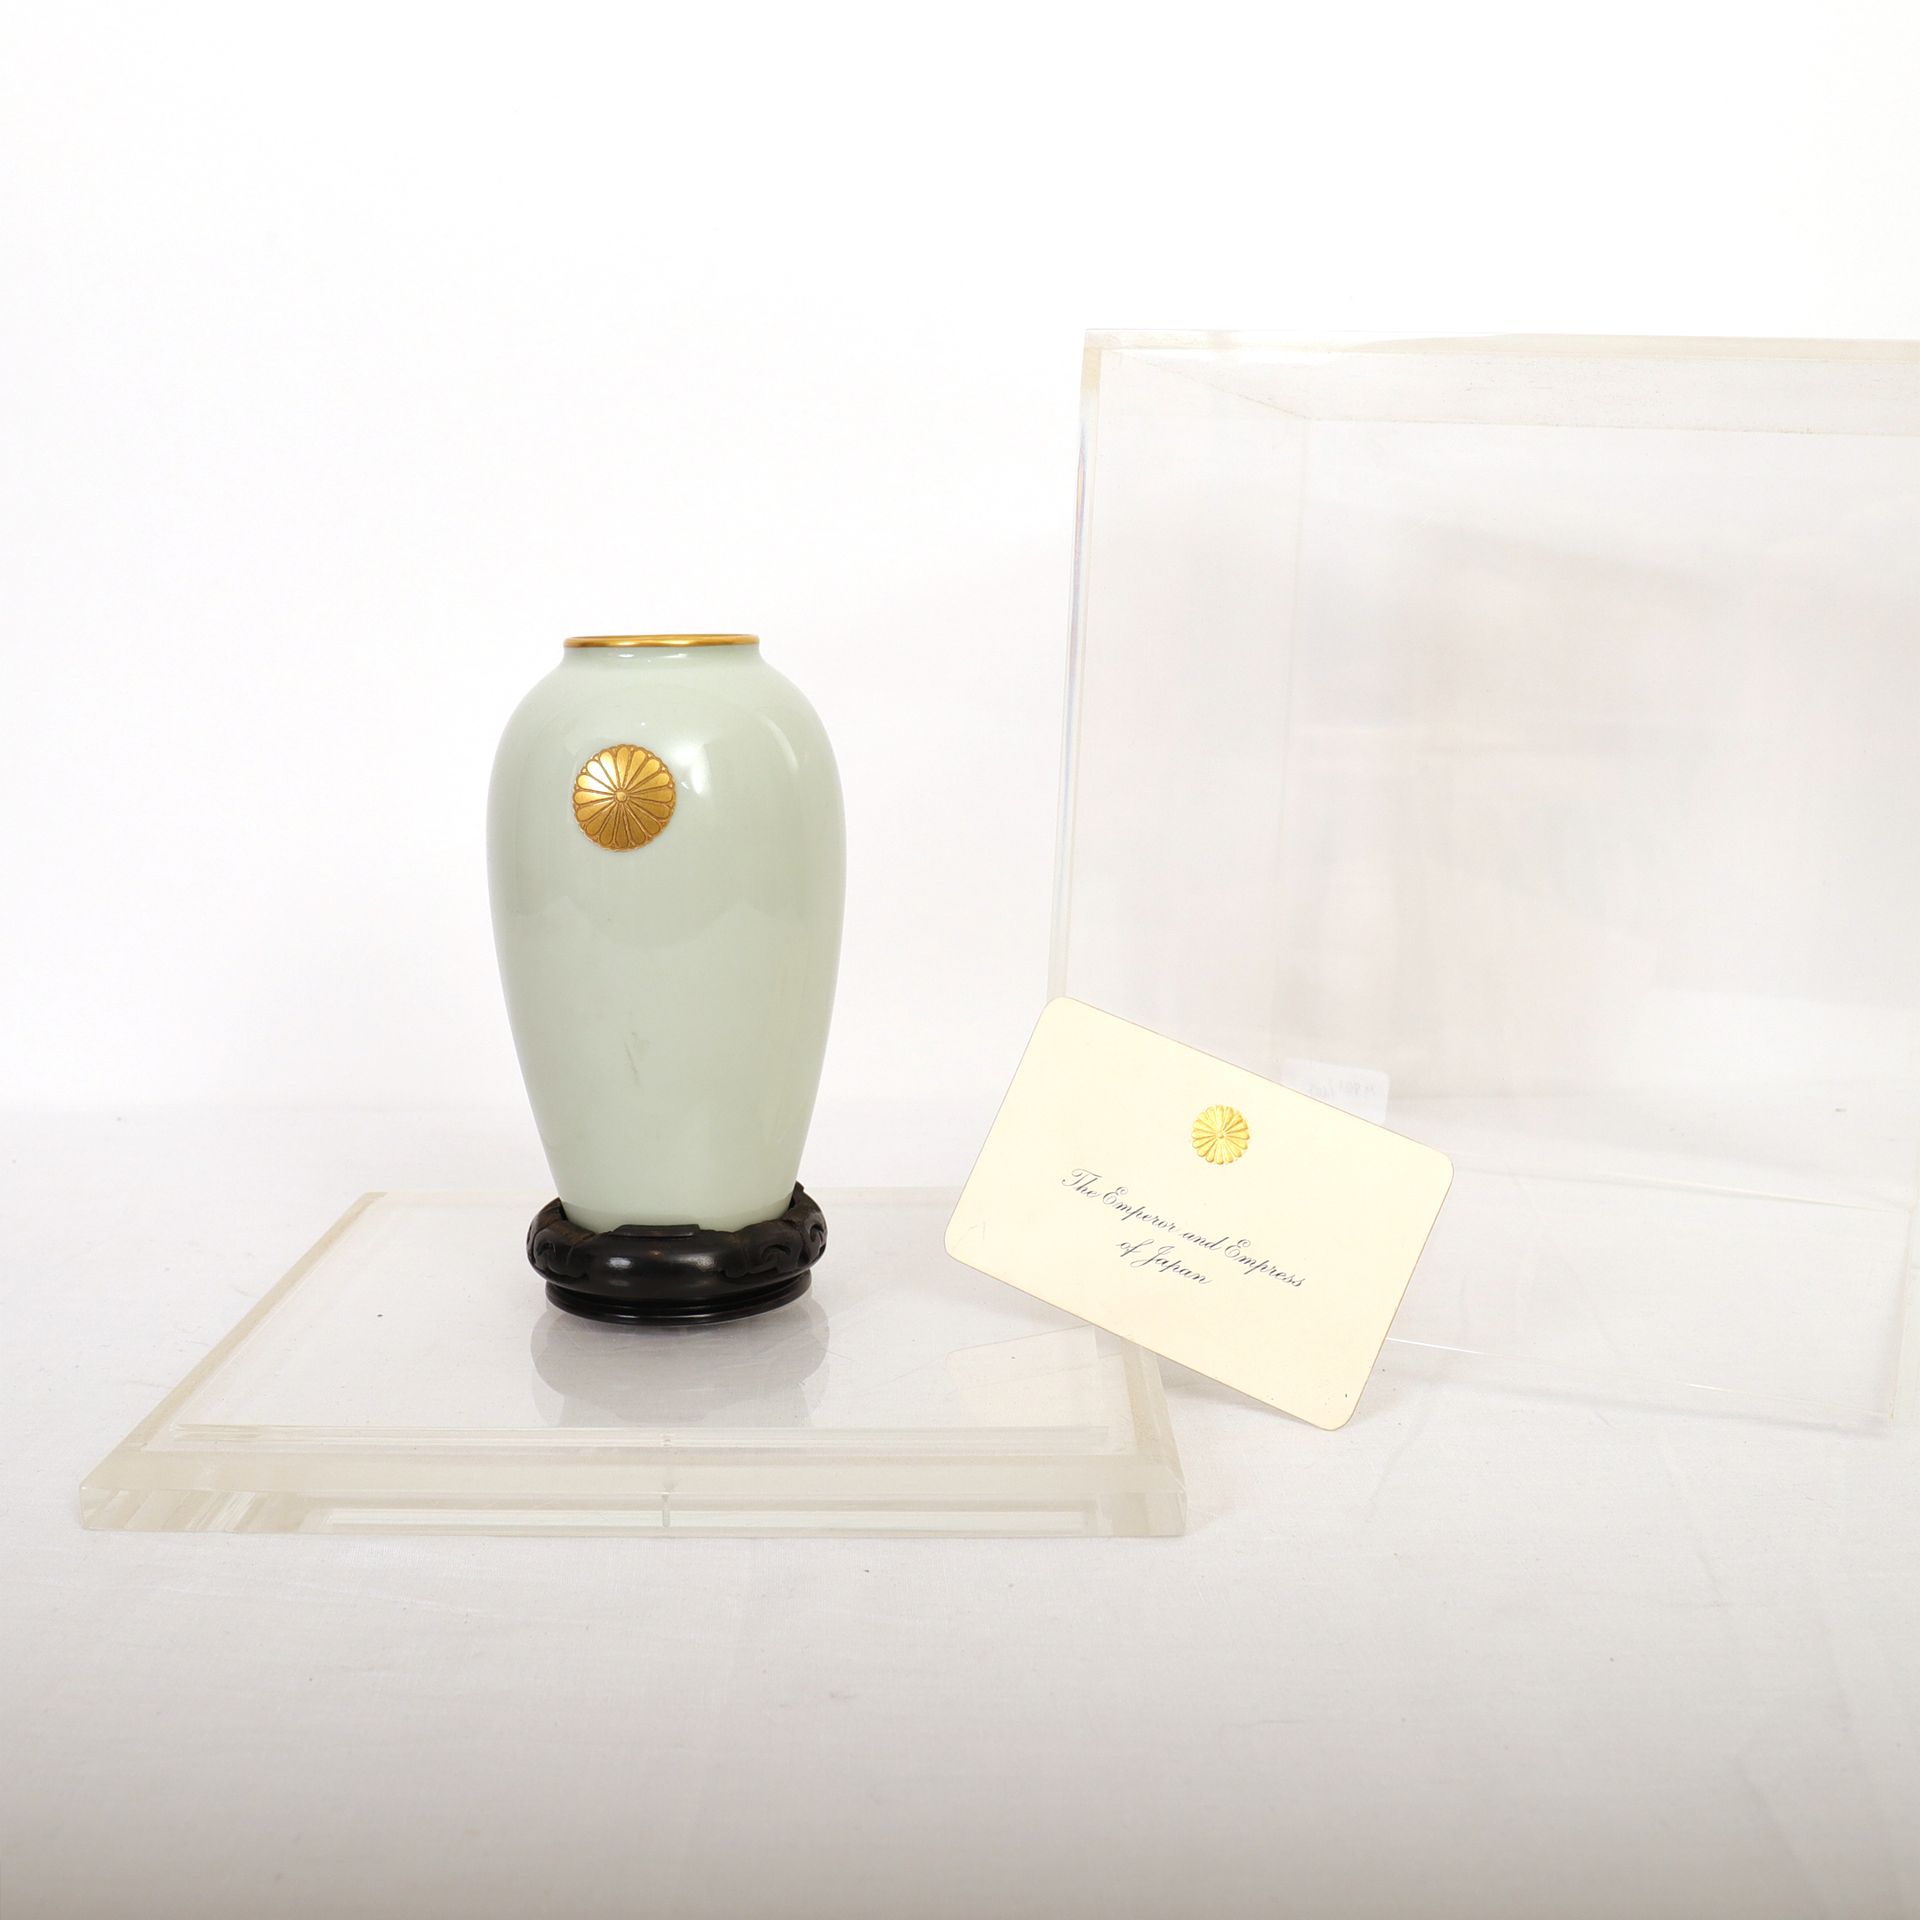 Null 彩色塞拉东小瓶，镀金唇，饰有皇室菊花图案

日本，20世纪，底部有签名

附有 "日本天皇和皇后 "的访问卡

在其有机玻璃箱中

高：15.5厘米